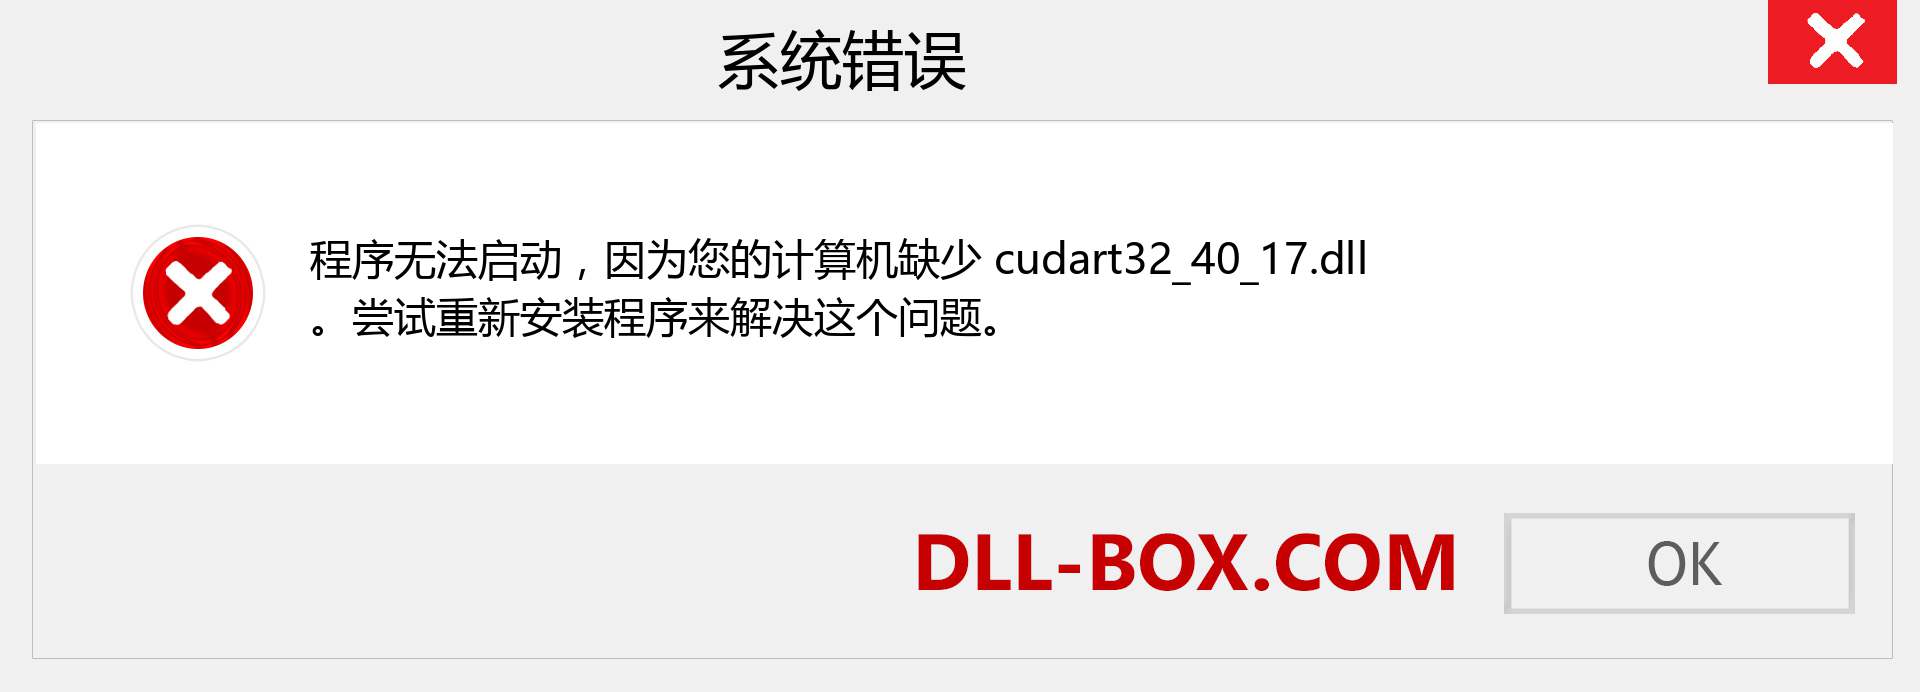 cudart32_40_17.dll 文件丢失？。 适用于 Windows 7、8、10 的下载 - 修复 Windows、照片、图像上的 cudart32_40_17 dll 丢失错误